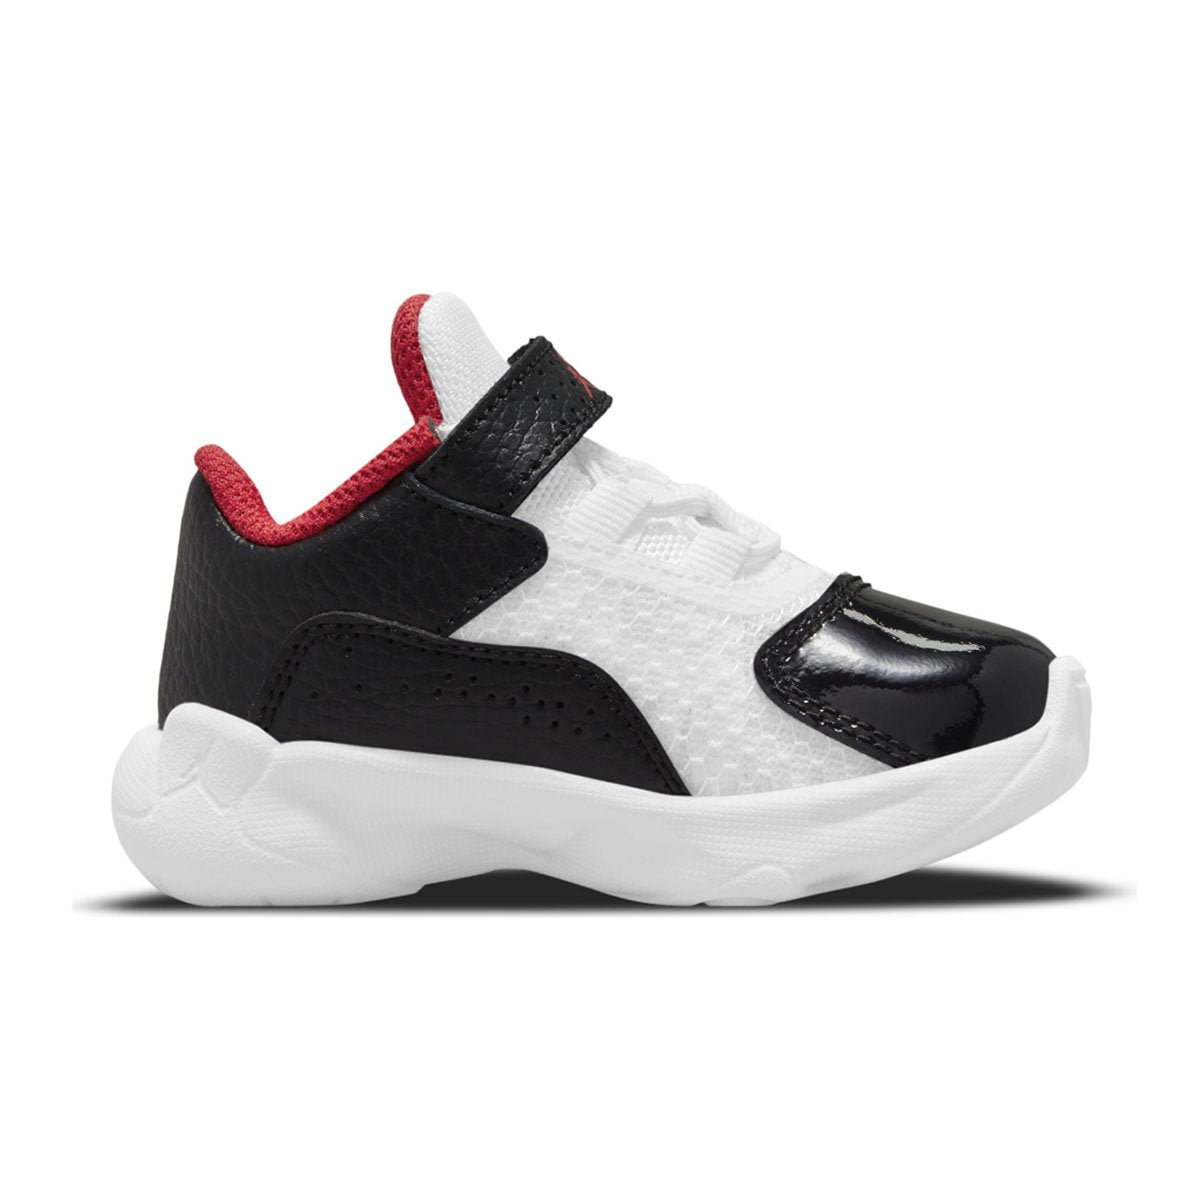 Jordan 11 CMFT Low Infant/Toddler Shoes